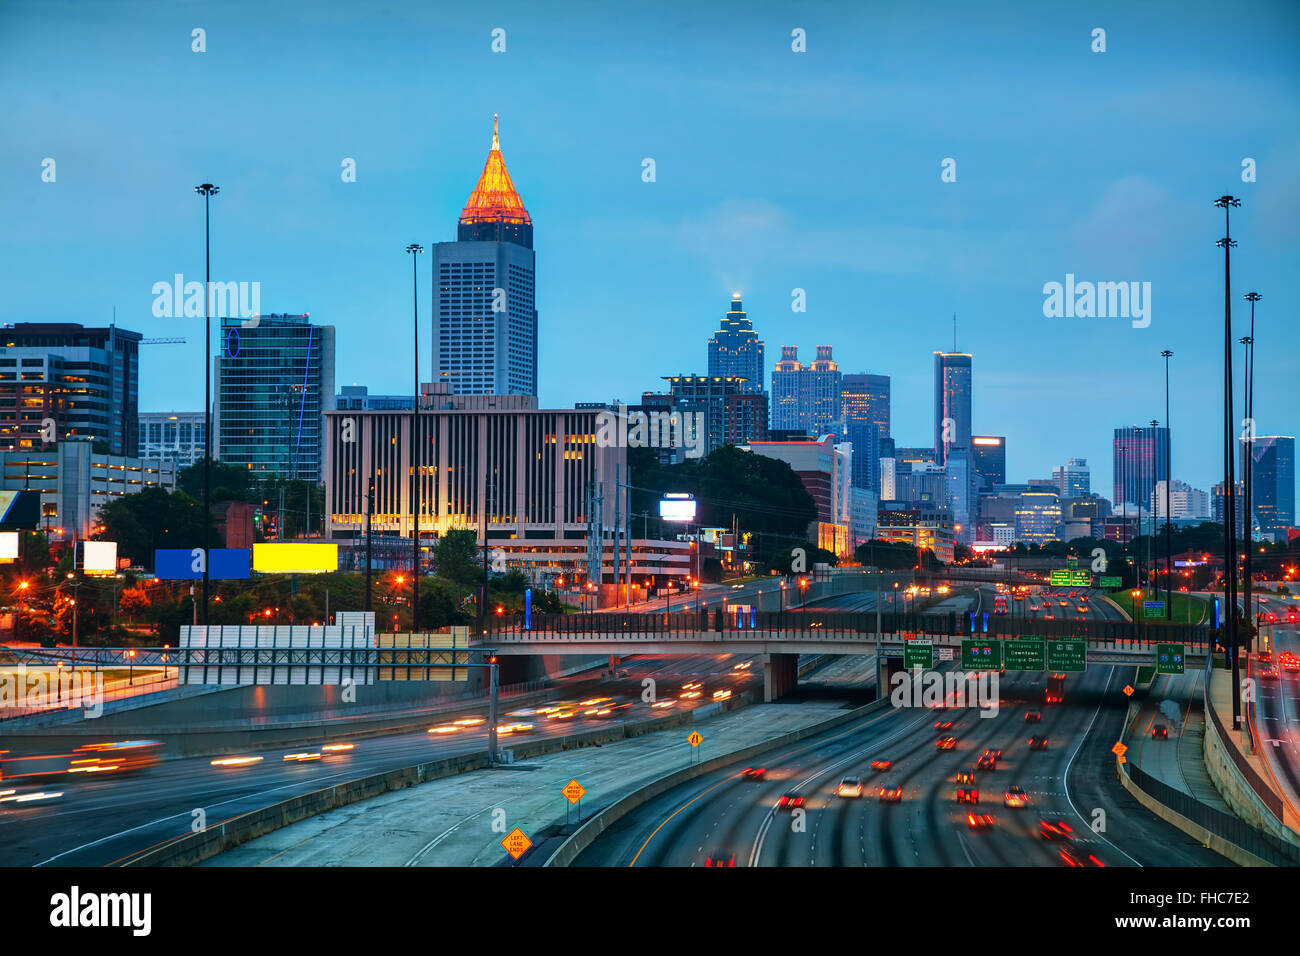 Le centre-ville d'Atlanta, Géorgie, à l'heure du lever Banque D'Images